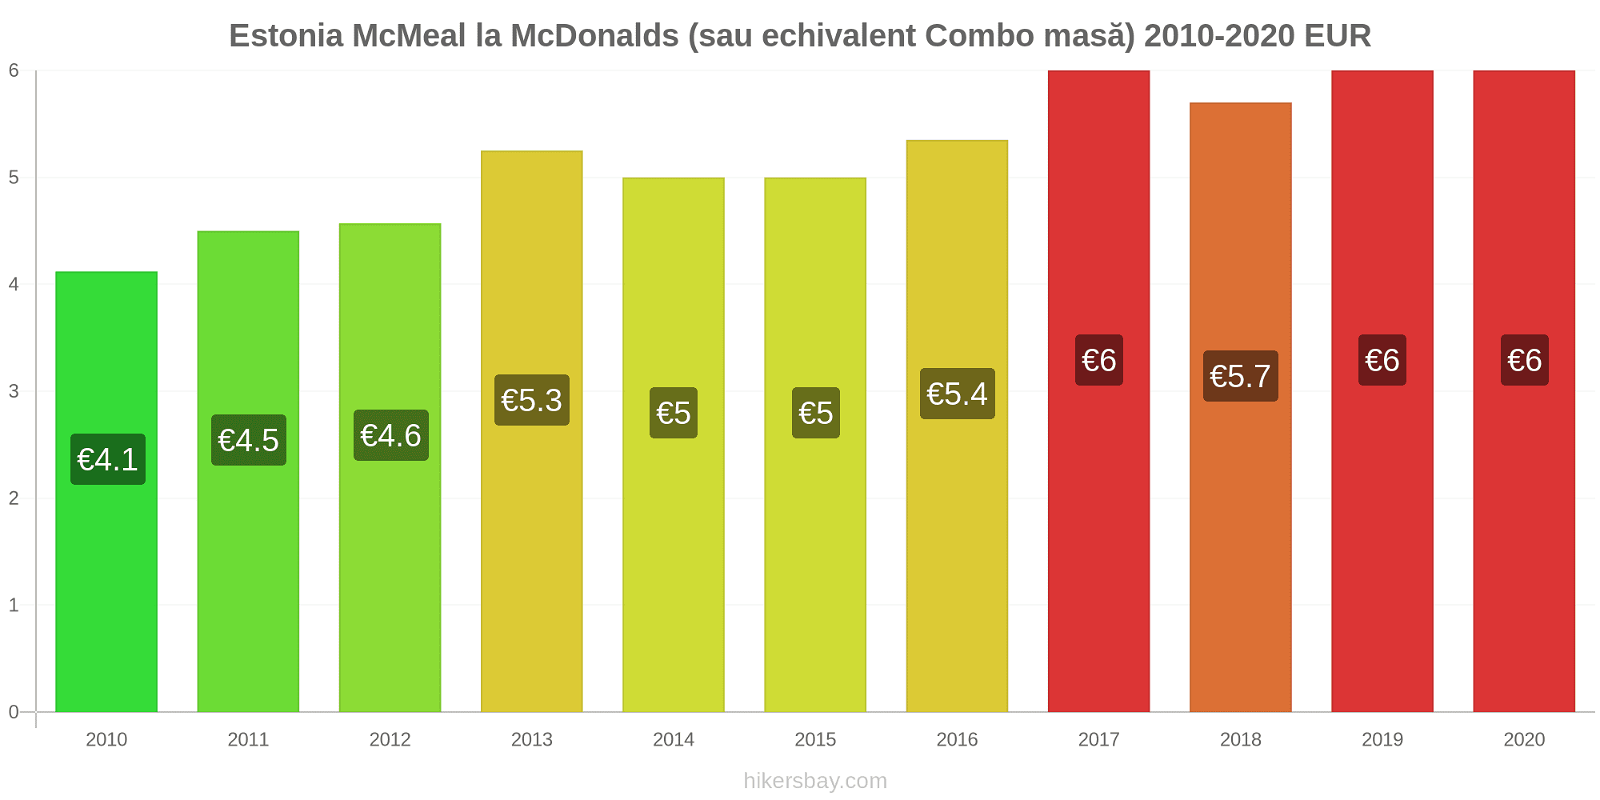 Estonia modificări de preț McMeal la McDonalds (sau echivalent Combo masă) hikersbay.com